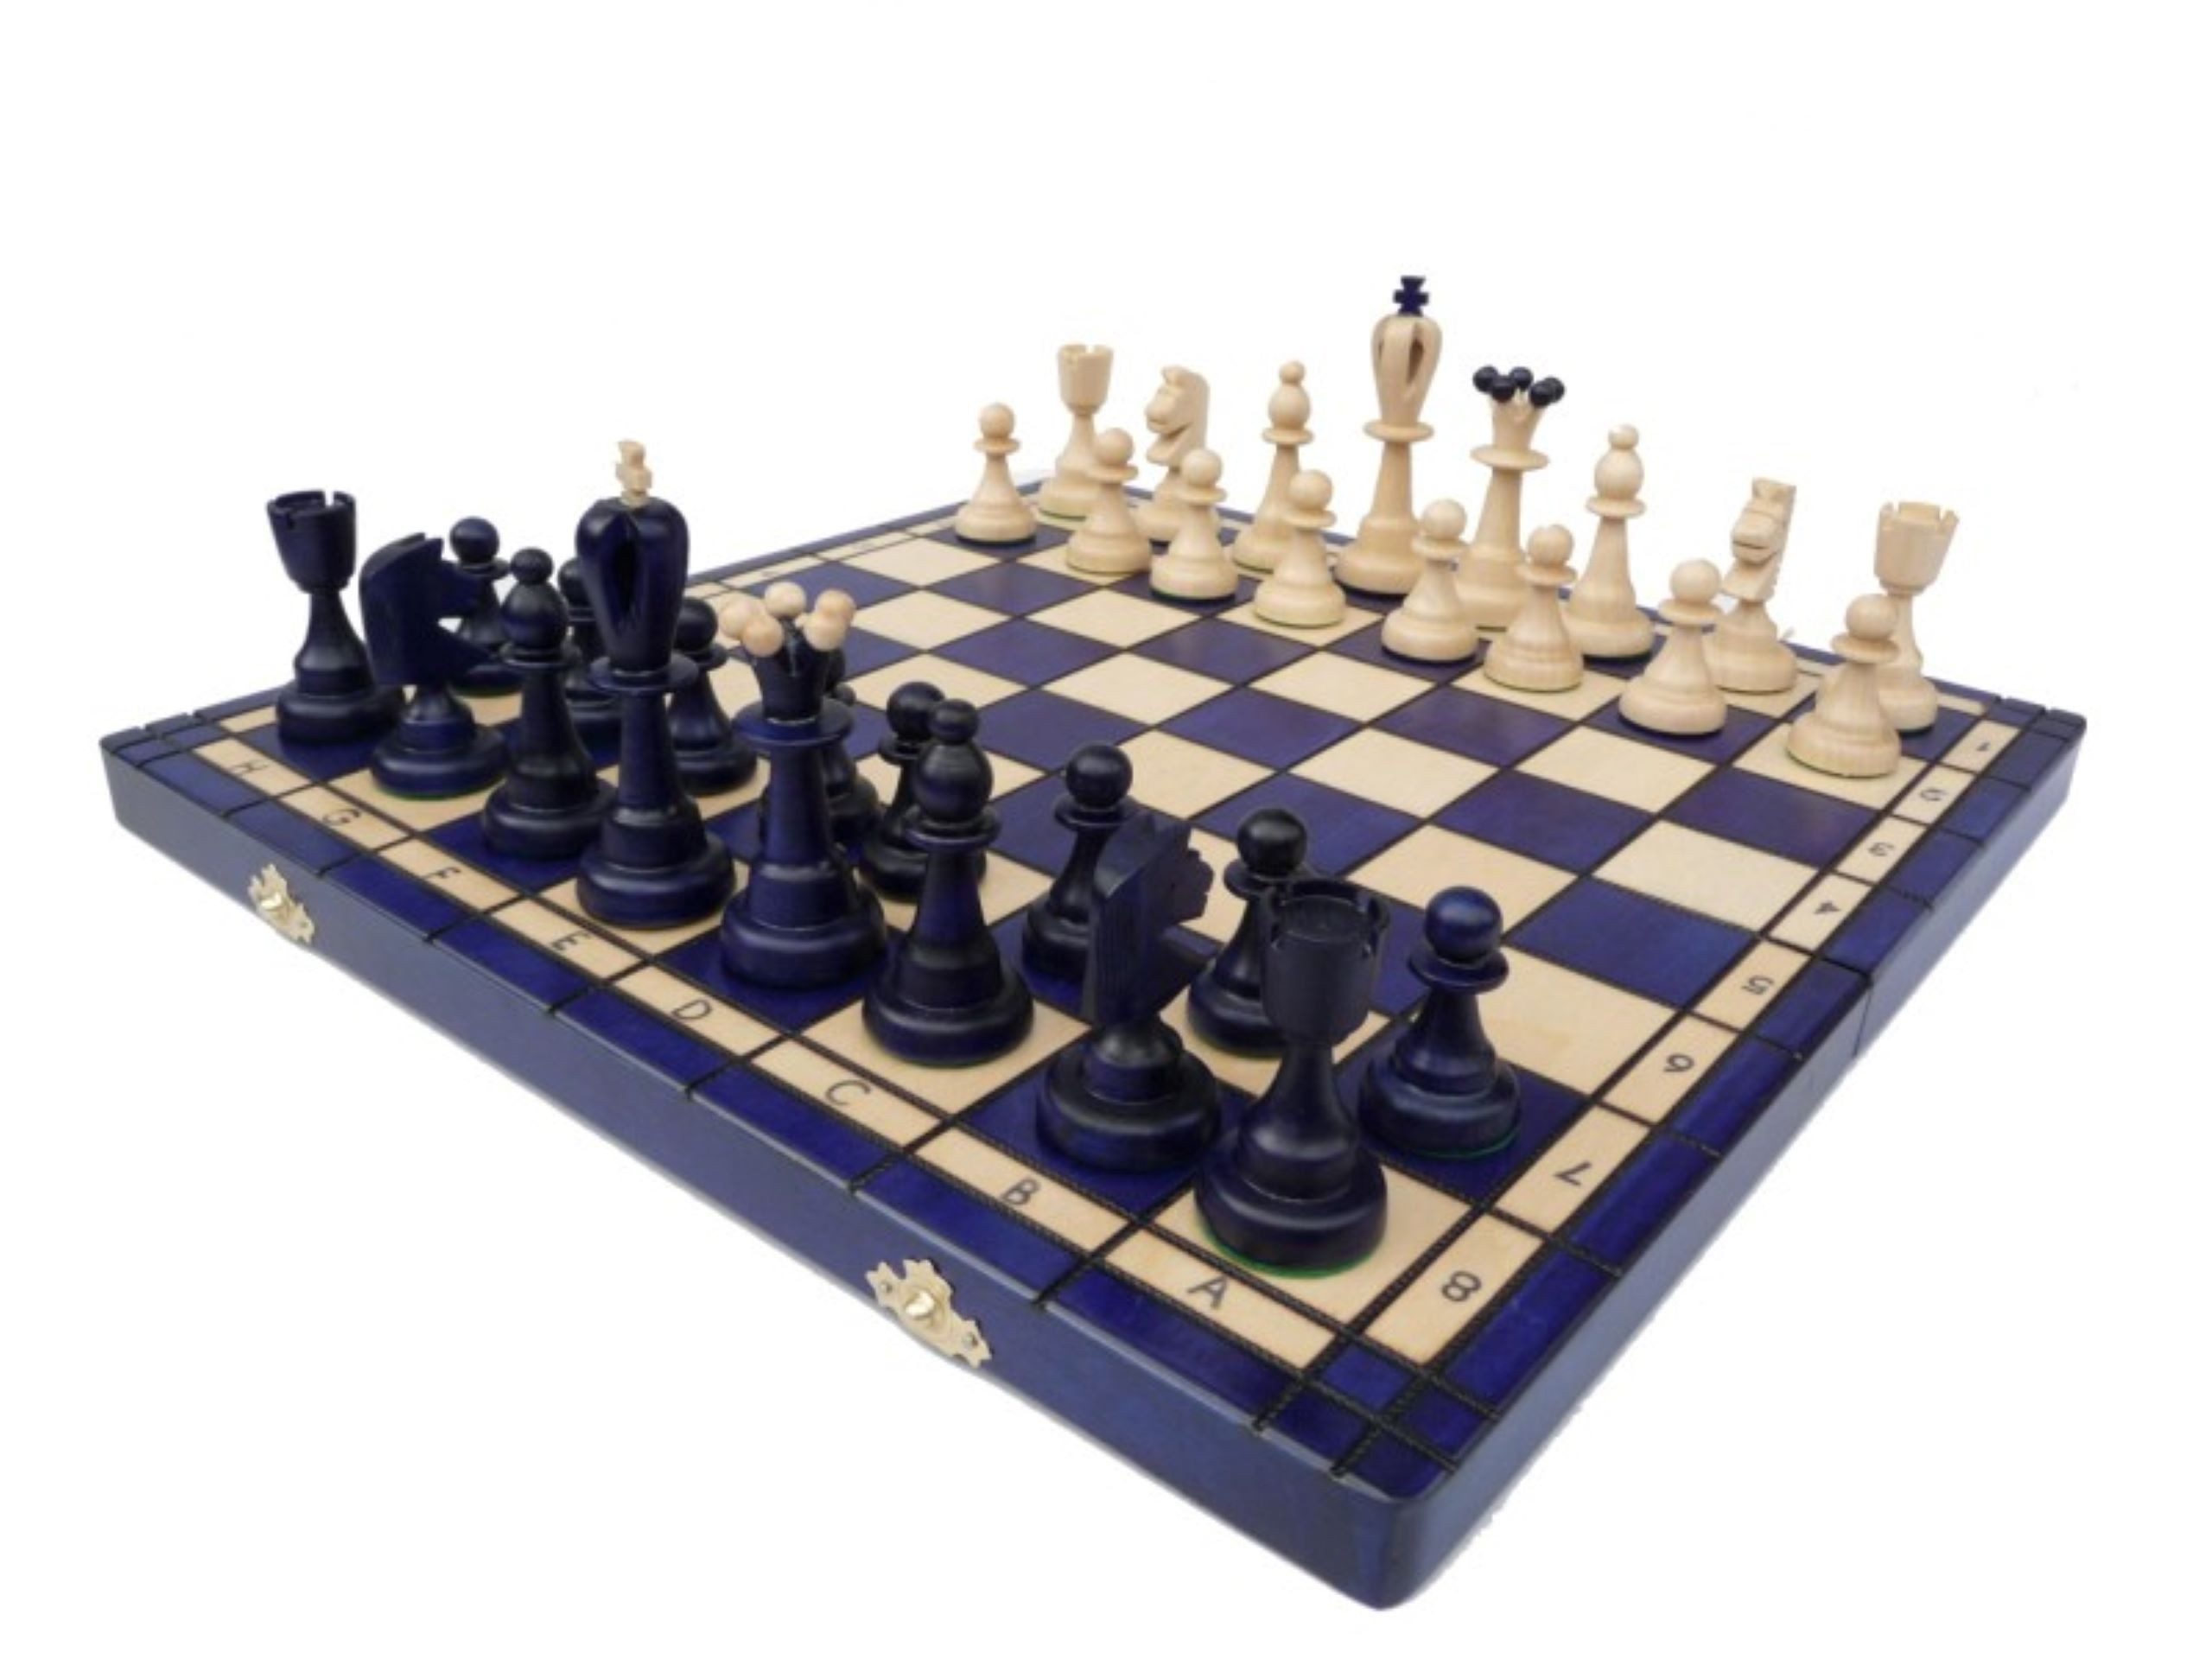 Holzprodukte Spiel, Schach Schachspiel Ace Asy Schachbrett 42x42 Holz